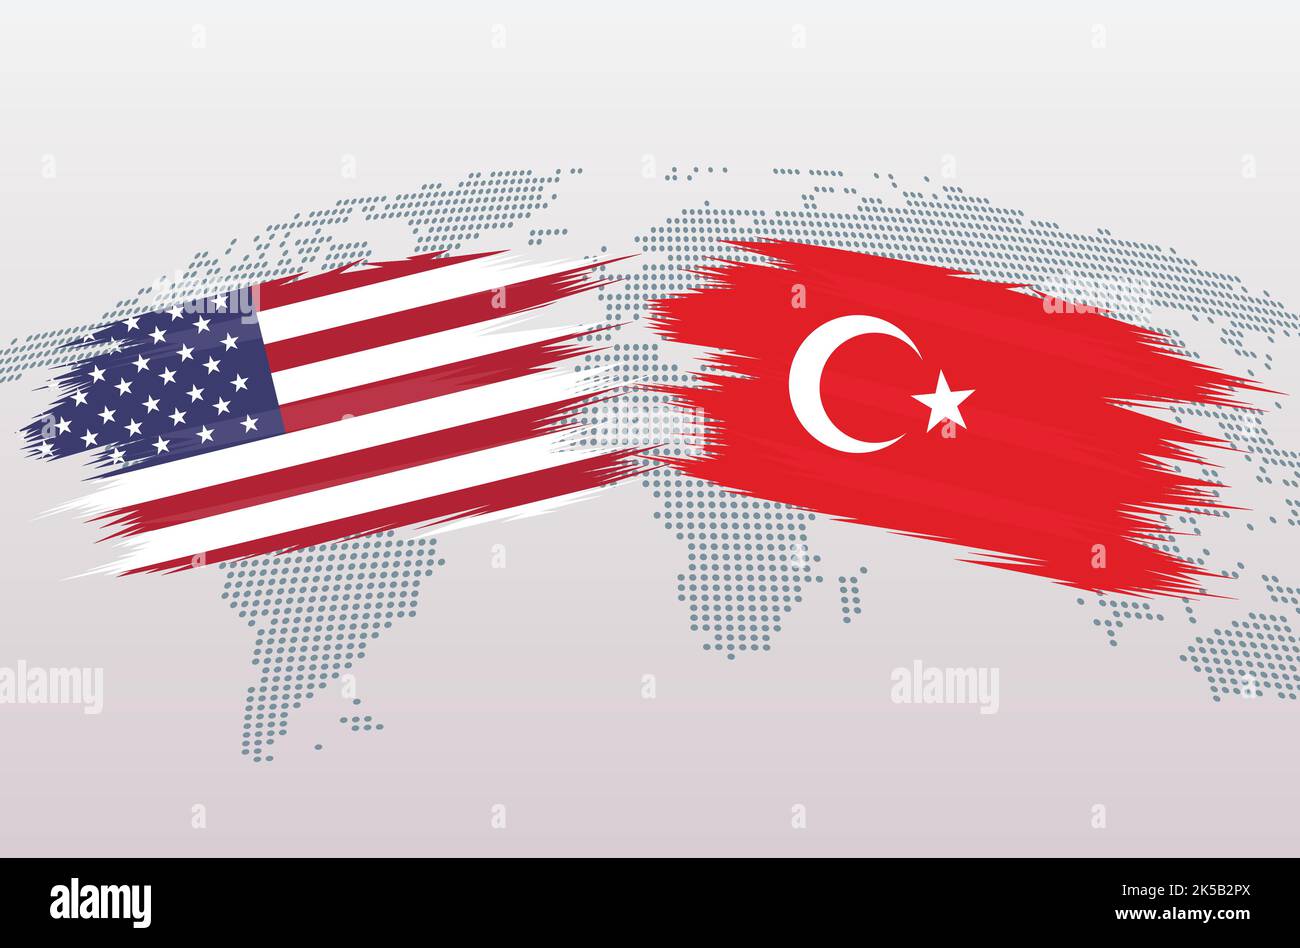 Bandiere USA vs Turkiye. Gli Stati Uniti d'America vs Turchia bandiere Turkiye, isolato su sfondo grigio della mappa del mondo. Illustrazione vettoriale. Illustrazione Vettoriale